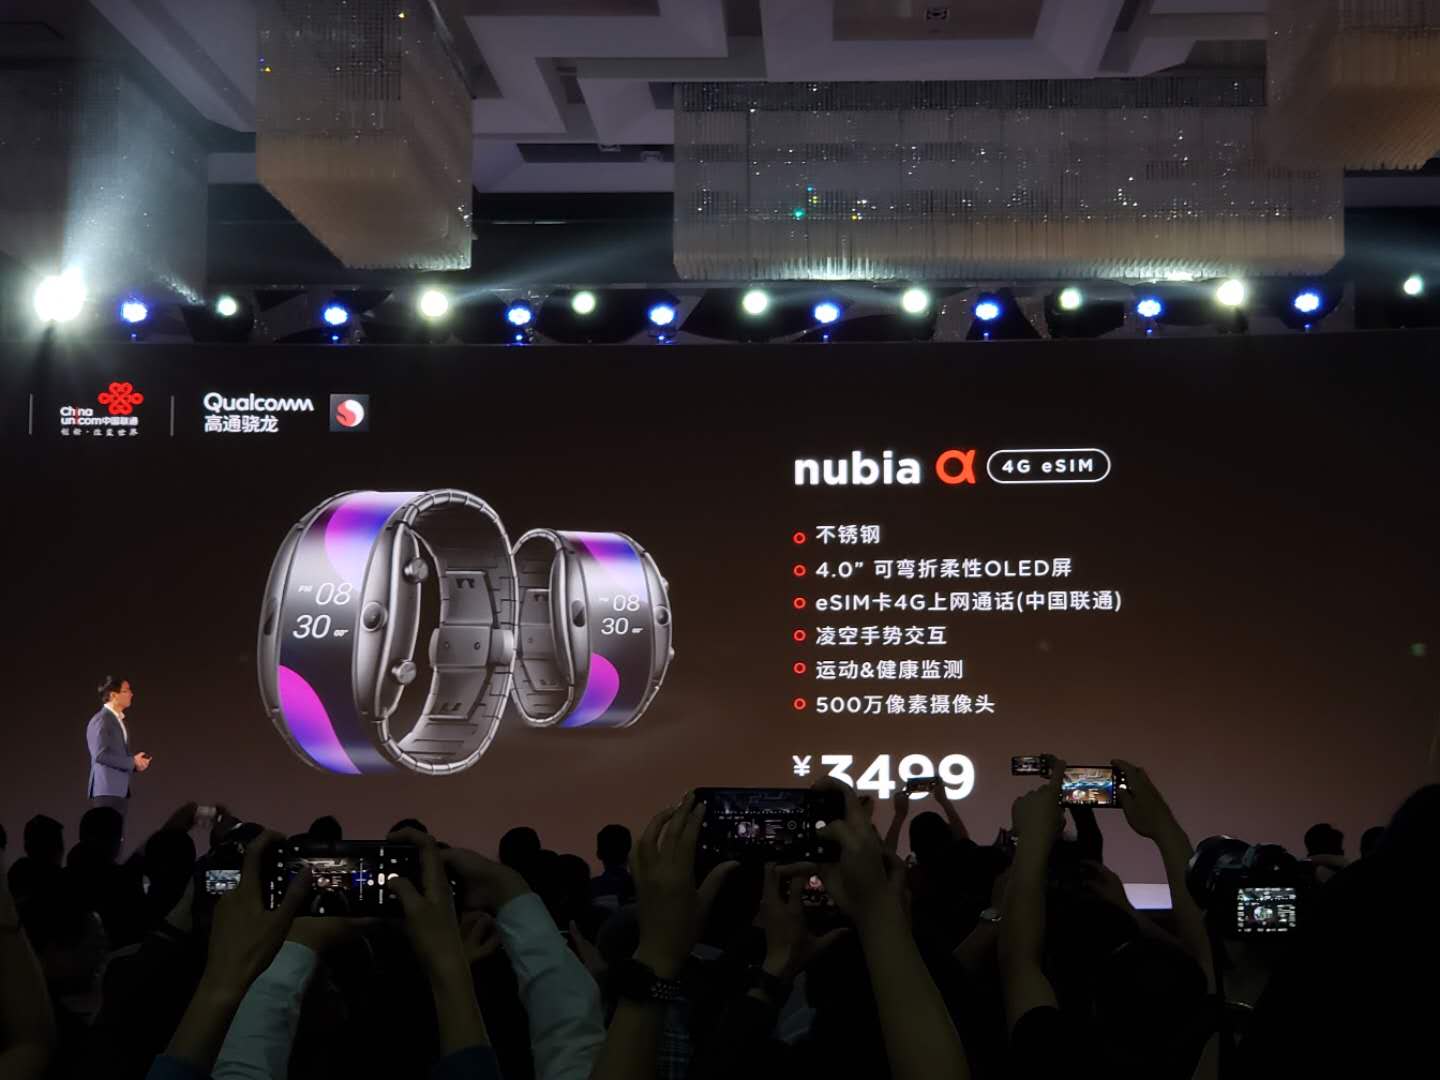 努比亚发布了新产品,并说它是一款可穿戴的手